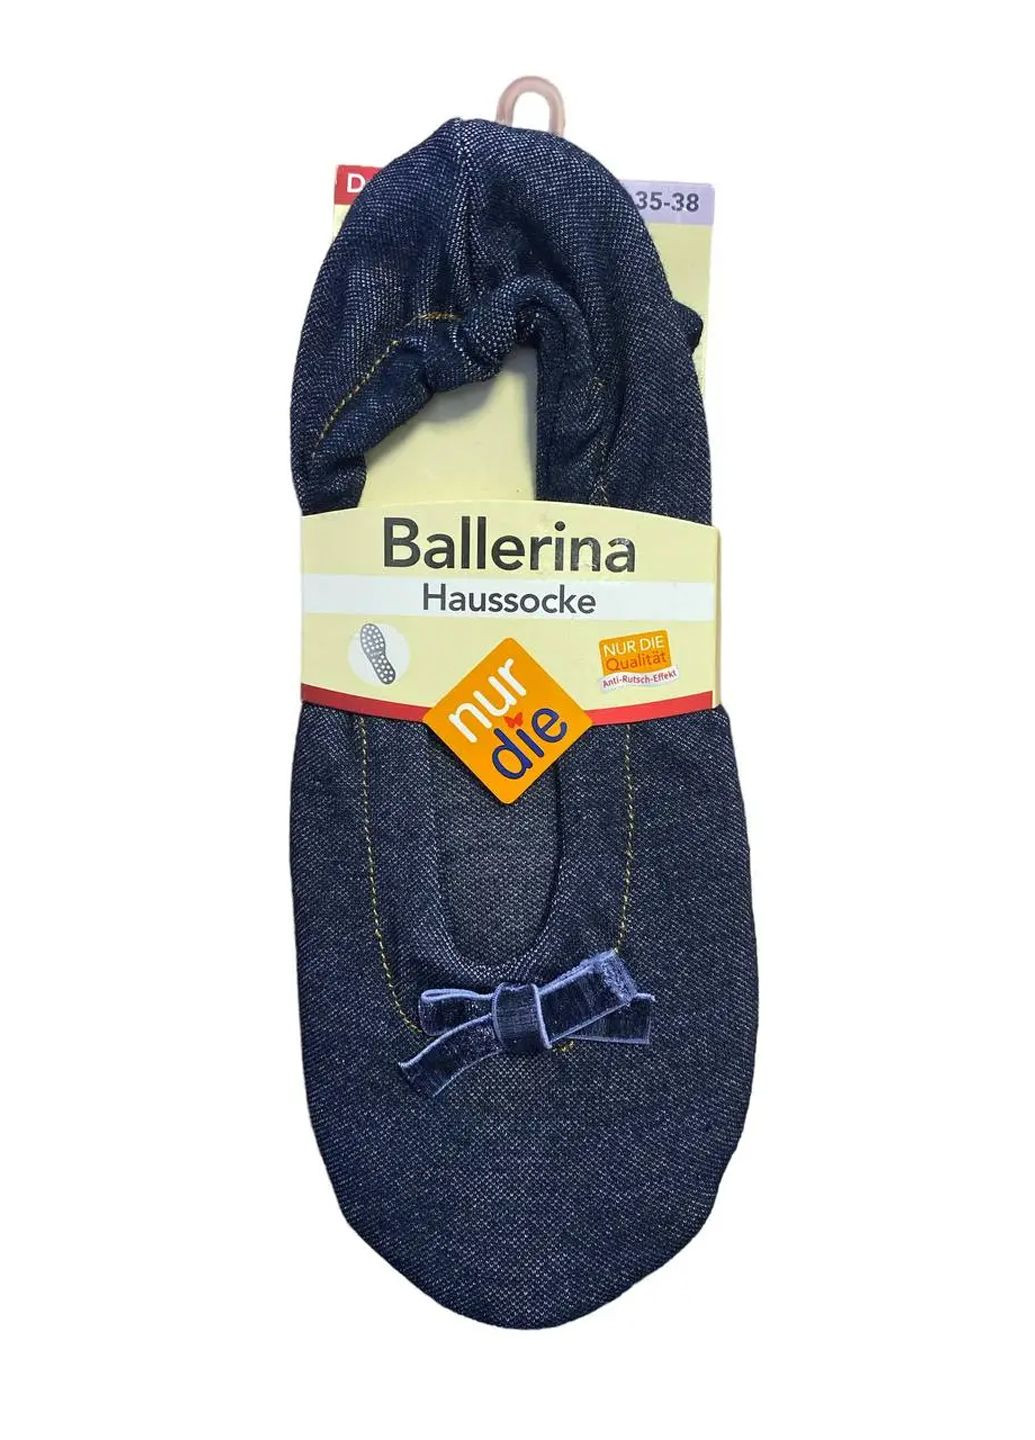 Темно-голубые женские домашние тапочки-балетки ballerina houssocke р.35-38 джинс синий (496847) Nur Die с бантом